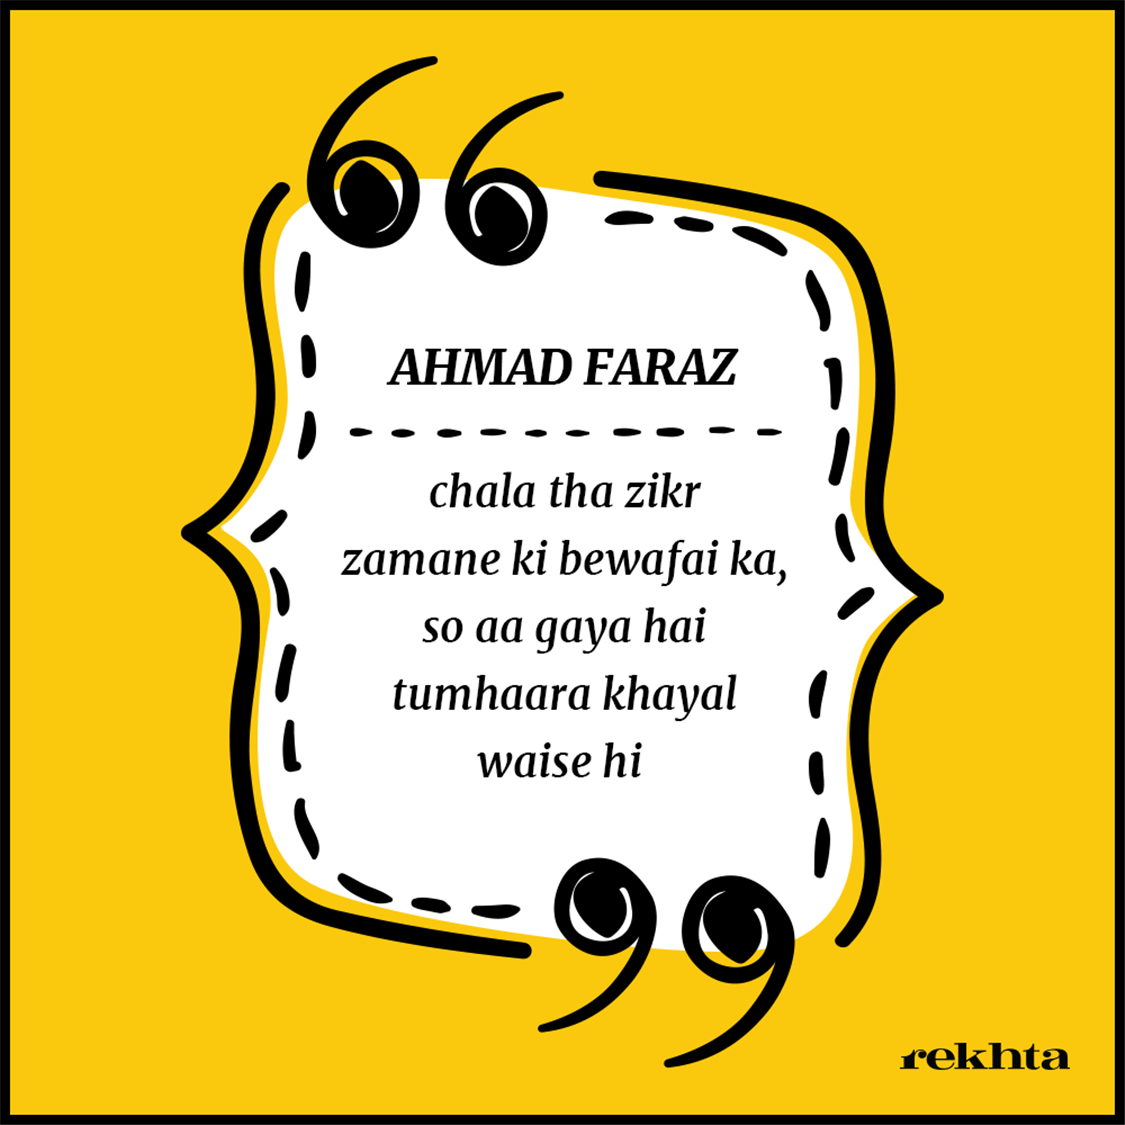 chalaa thaa zikr zamaane kii bevafaa.ii kaa-Ahmad Faraz